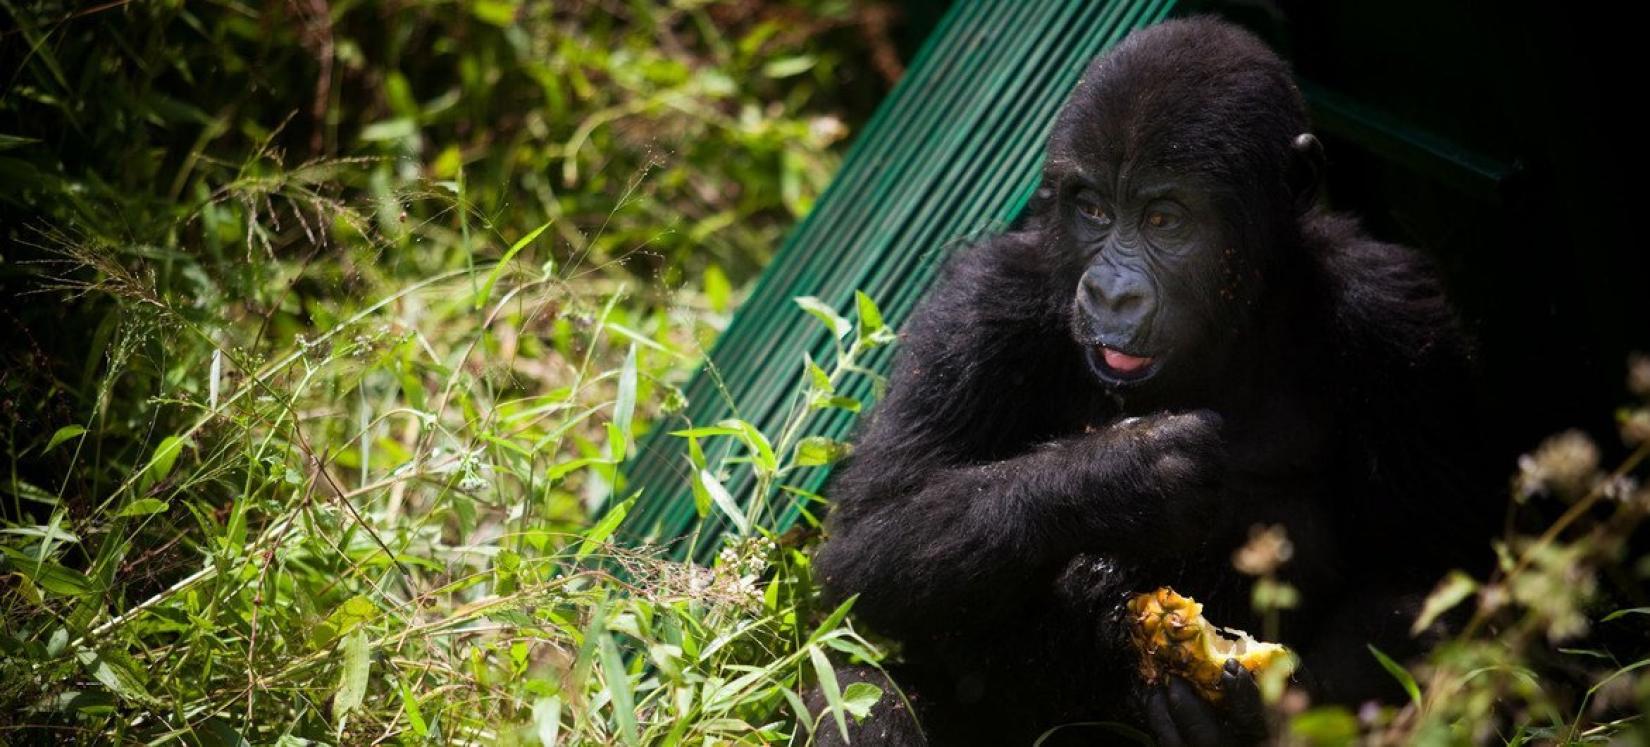 Um gorila órfão solto em seu novo habitat, no leste da República Democrática do Congo. Populações saudáveis ​​de gorilas estão se tornando cada vez mais isoladas devido à perda de habitat e conflitos em toda a região.